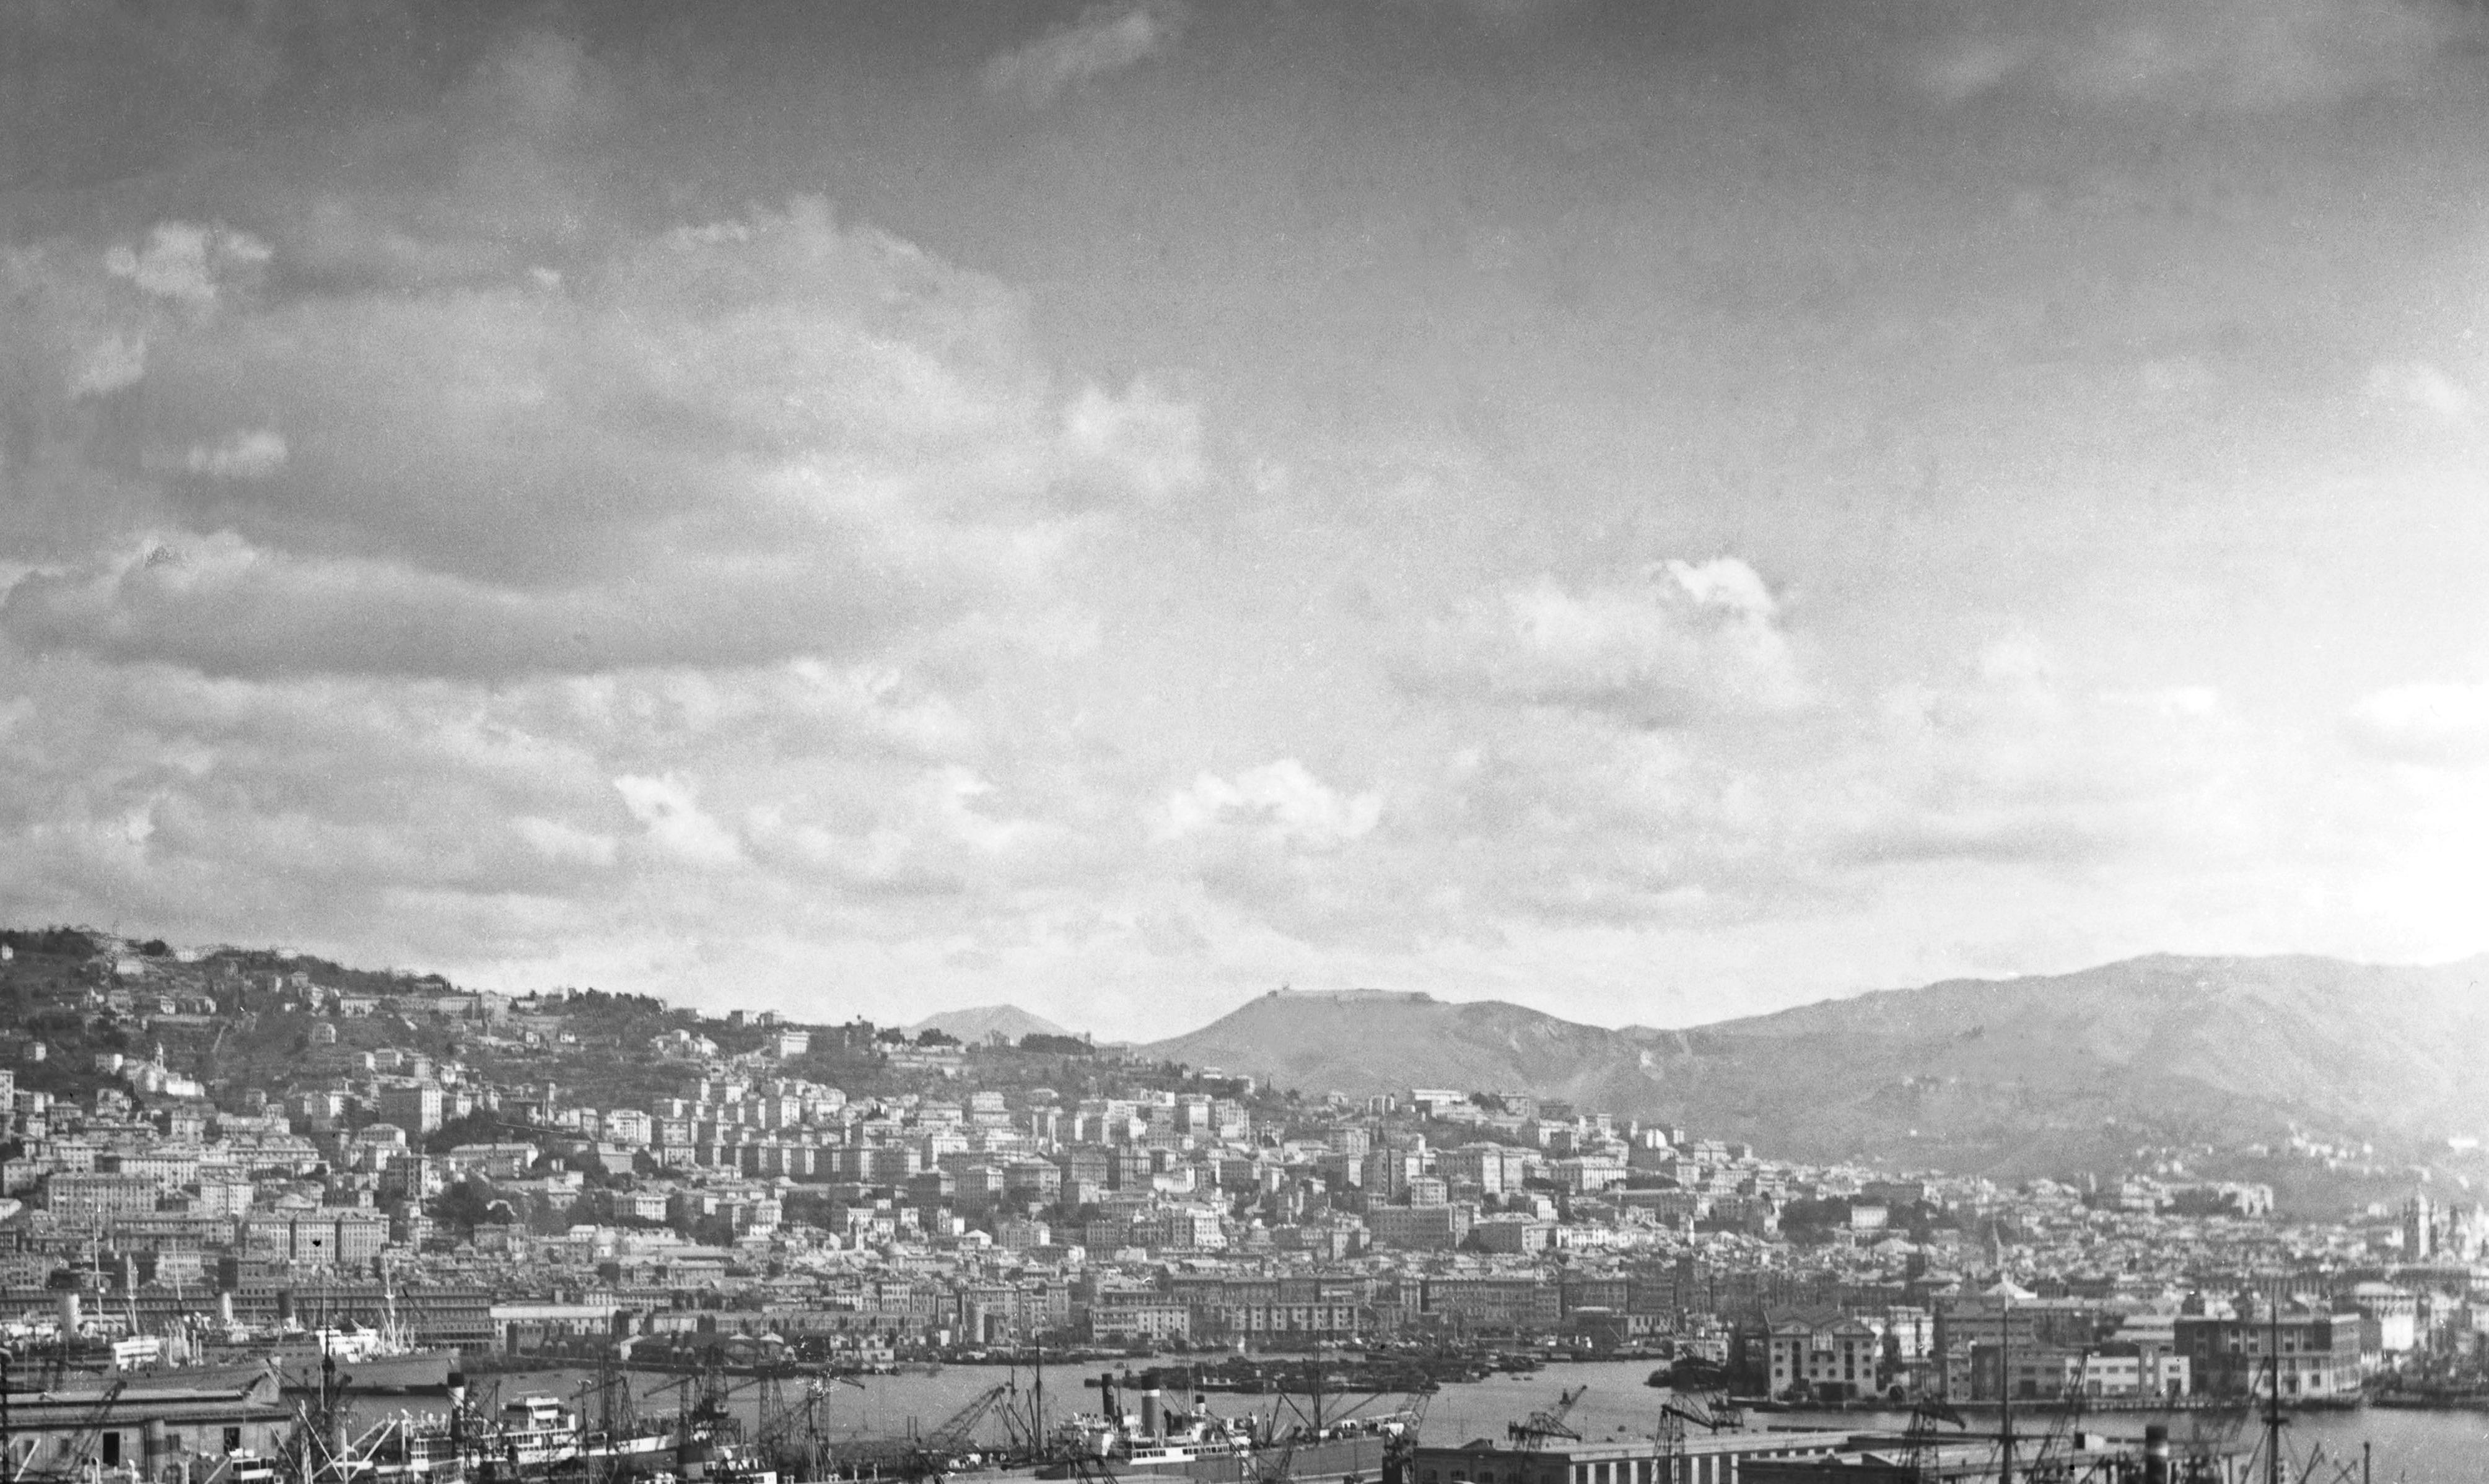  Vue industrielle - port de Genova, Italie 1939 Imprimé ultérieurement  - Moderne Photograph par Karl Heinrich Lämmel